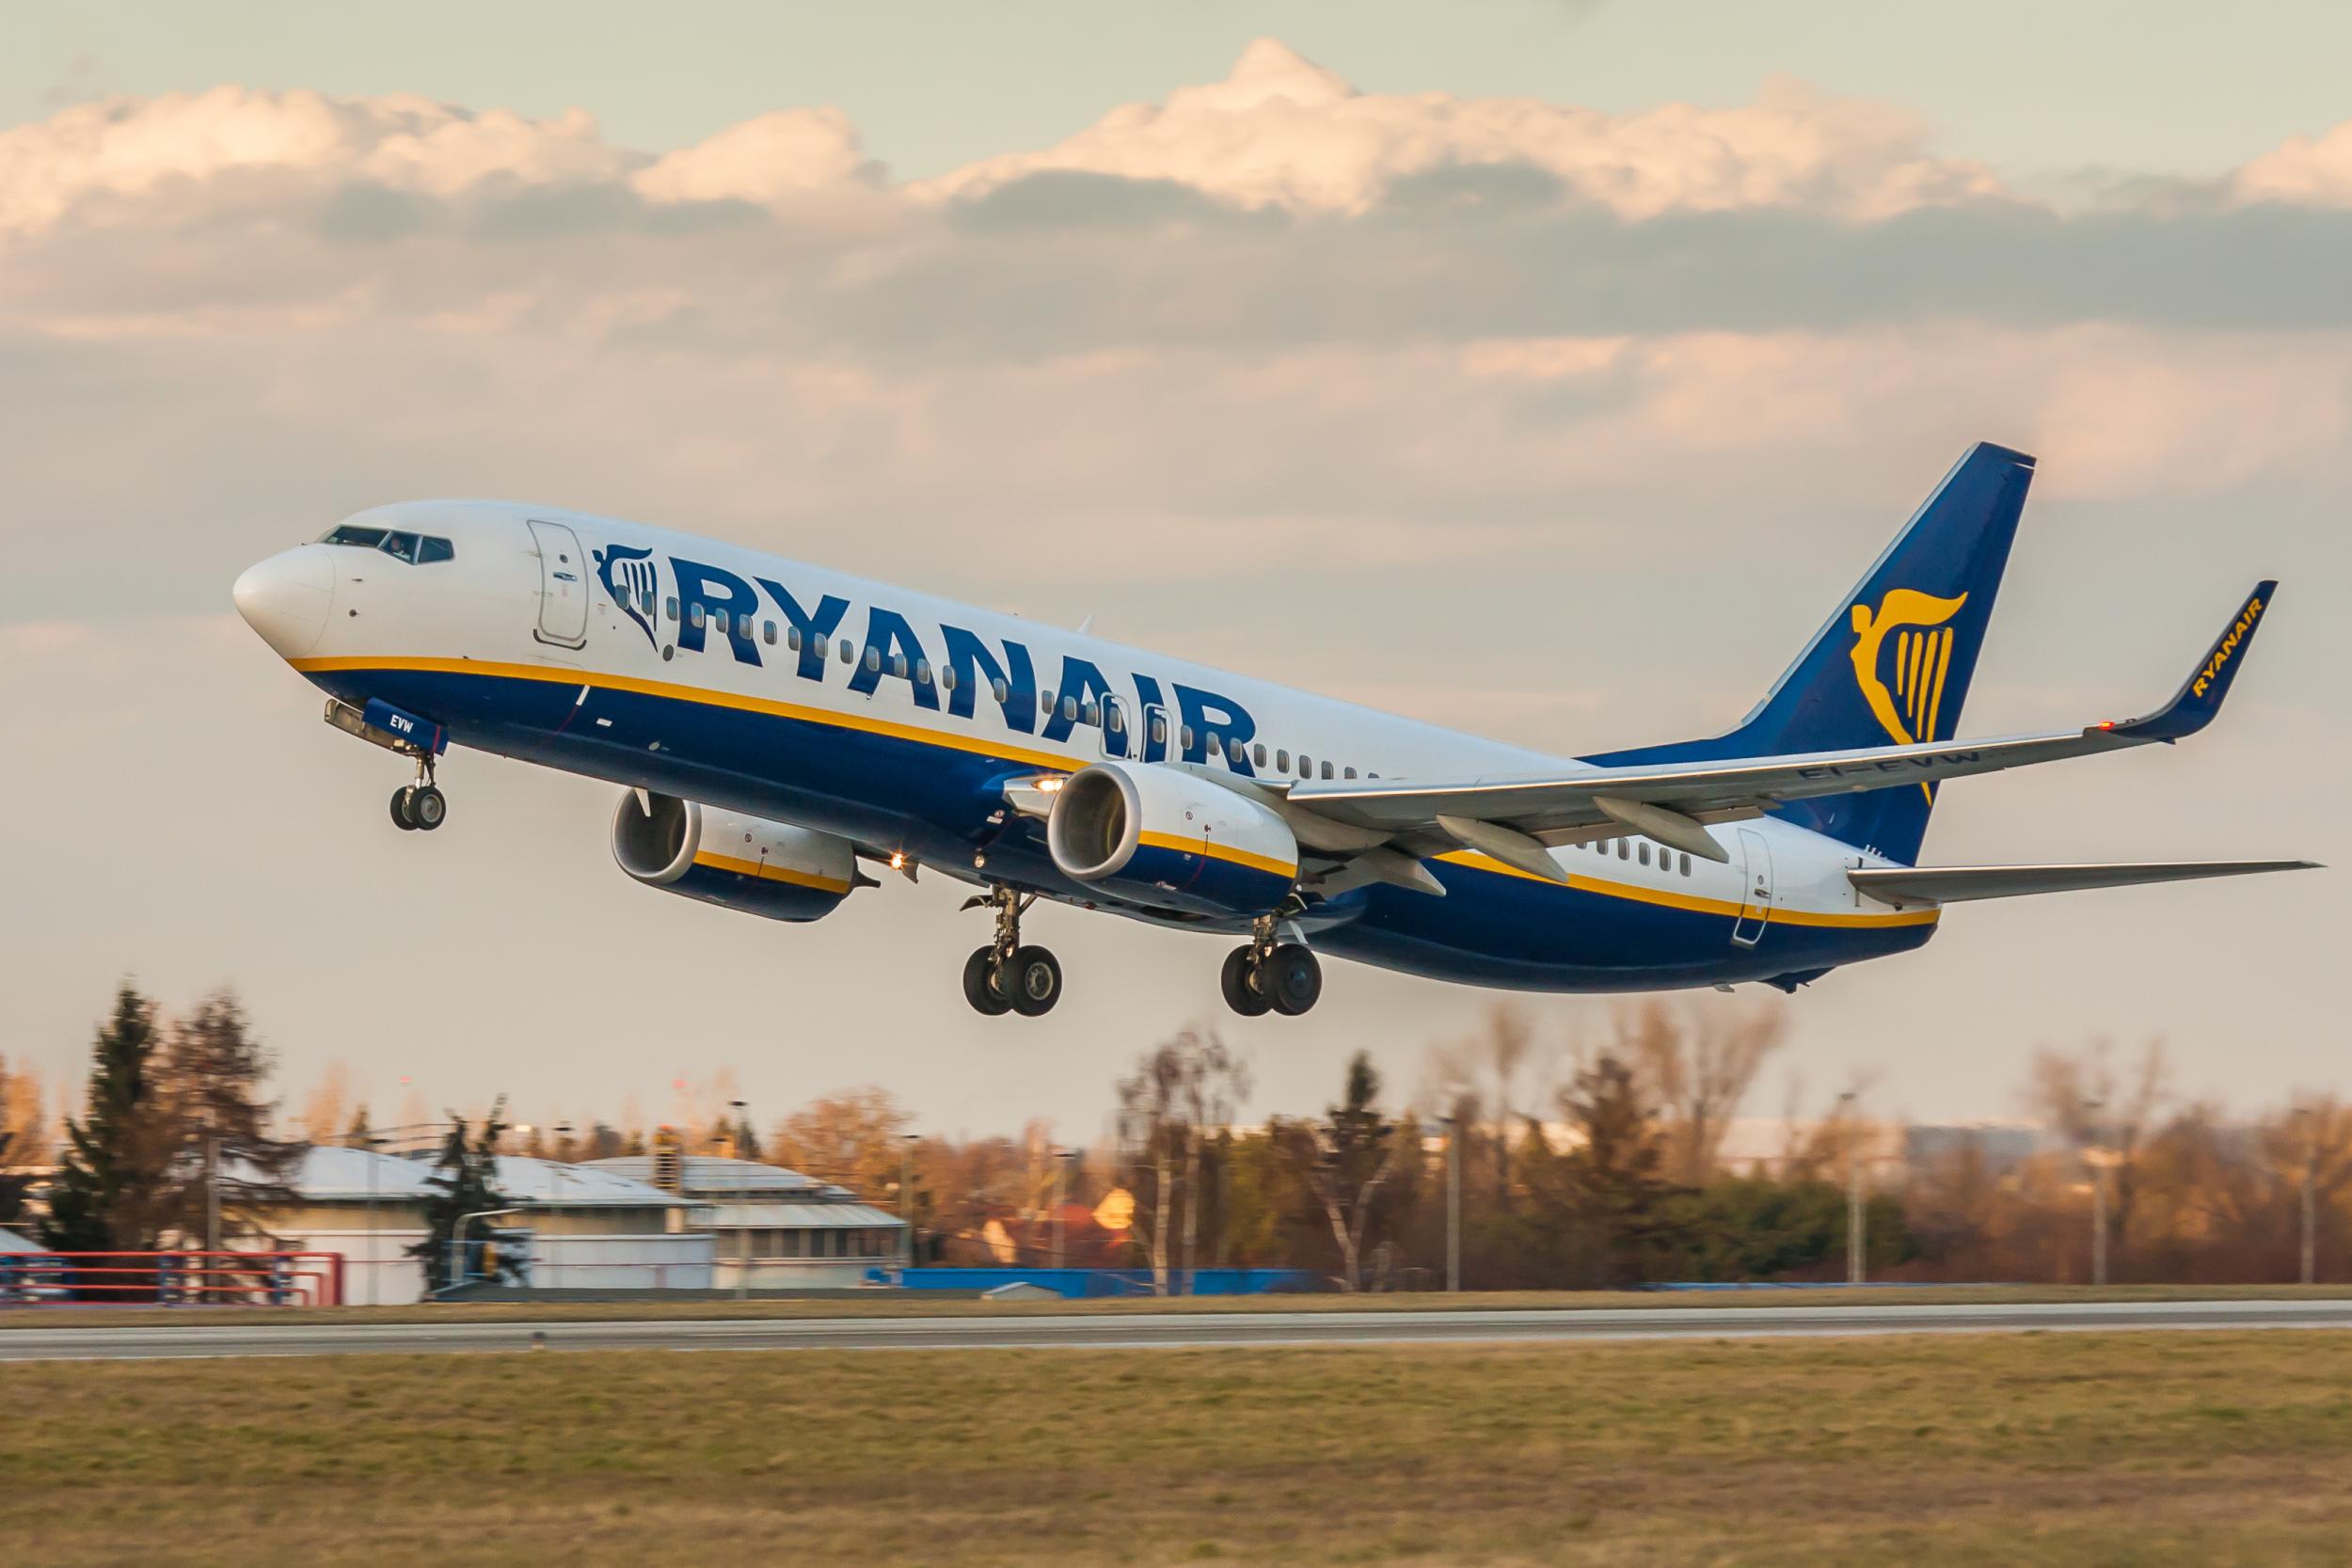 PeritoBurrito | 13 фактов, которые вы не знали о Ryanair